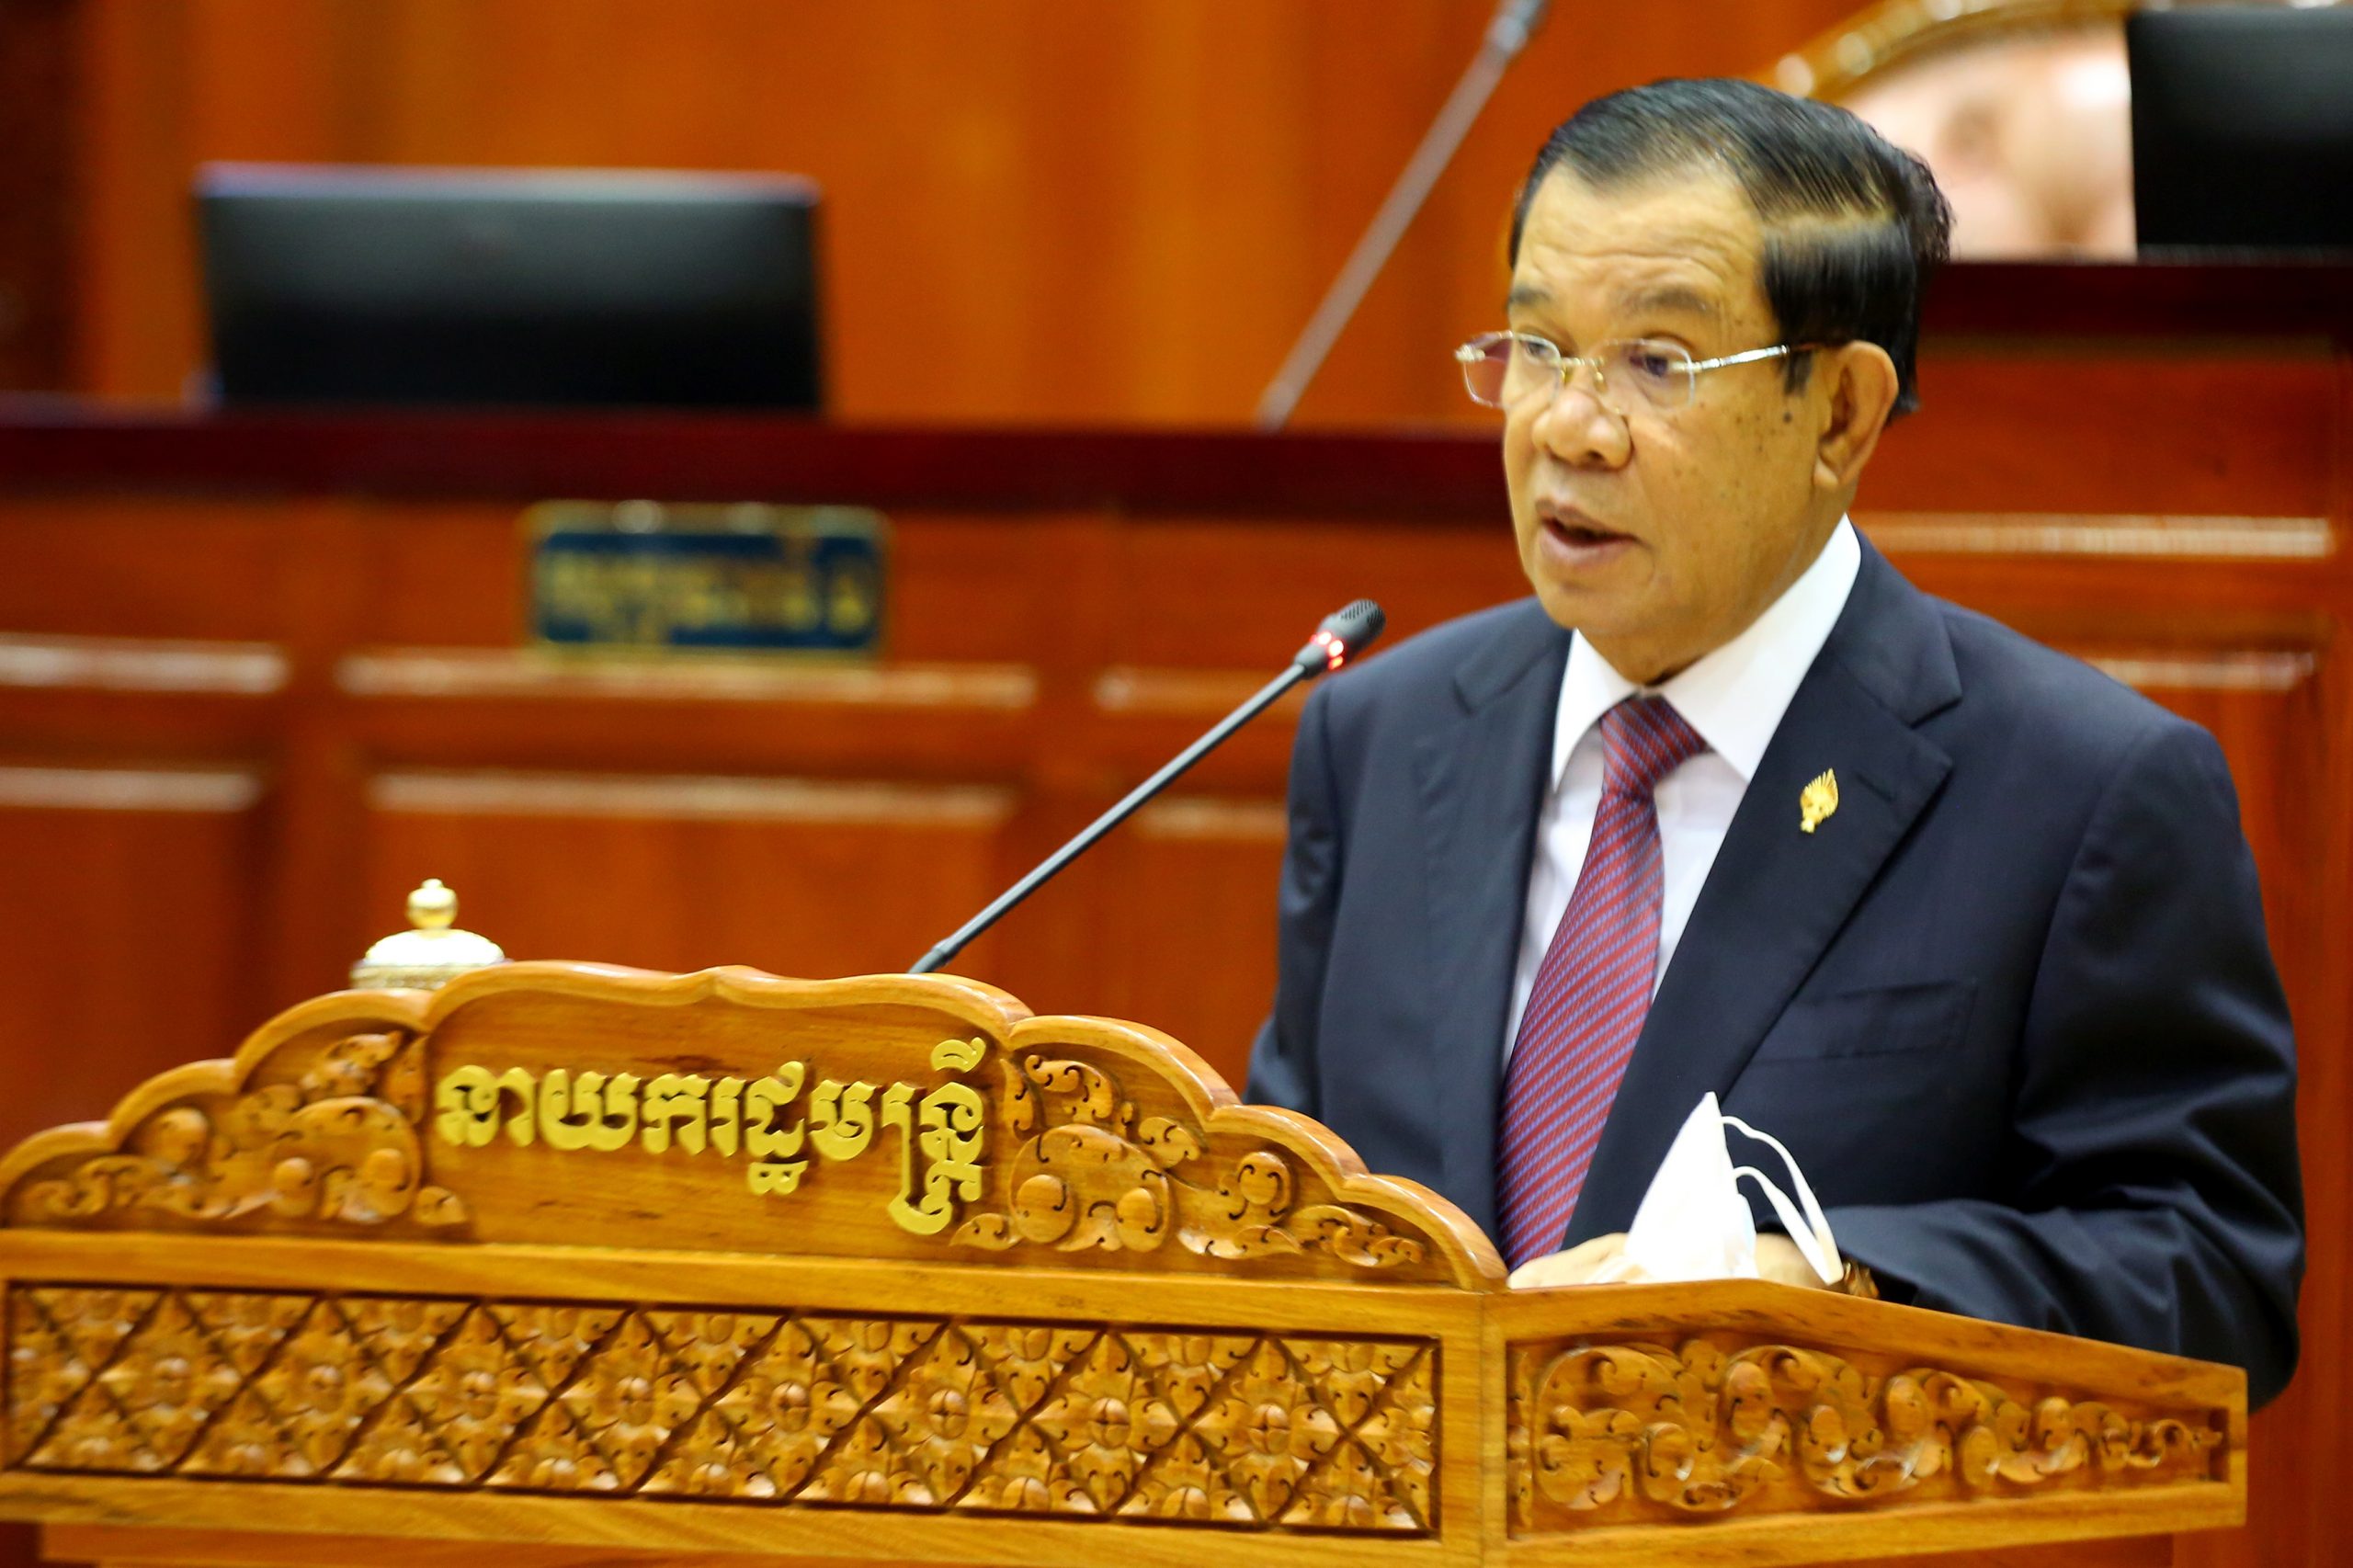 看世界／防止外国干预 柬埔寨修法禁重要机关首长拥双重国籍